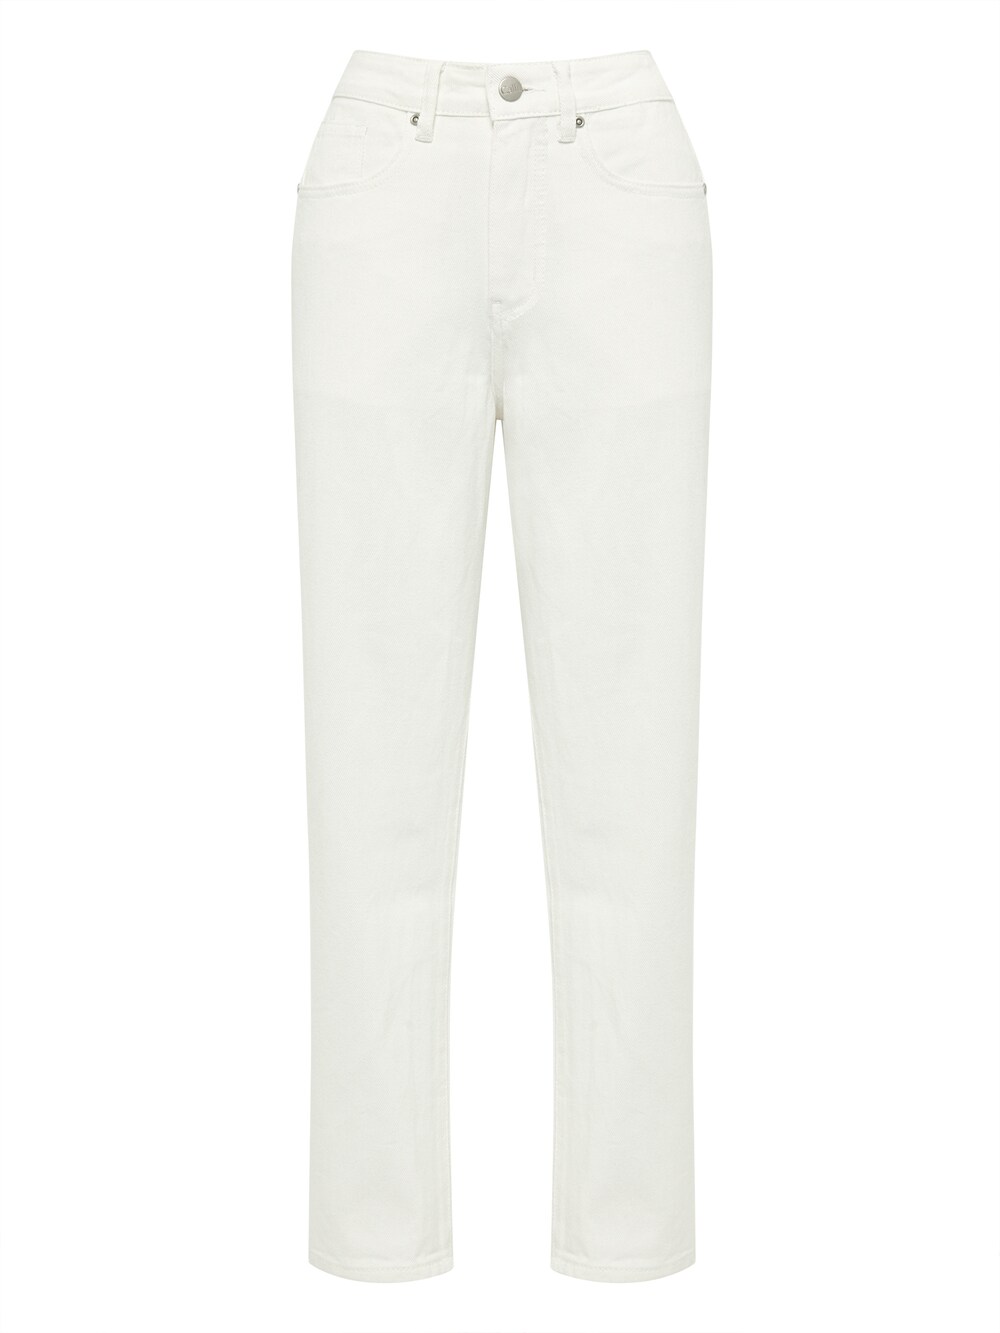 Обычные джинсы Calli LUNA, белый